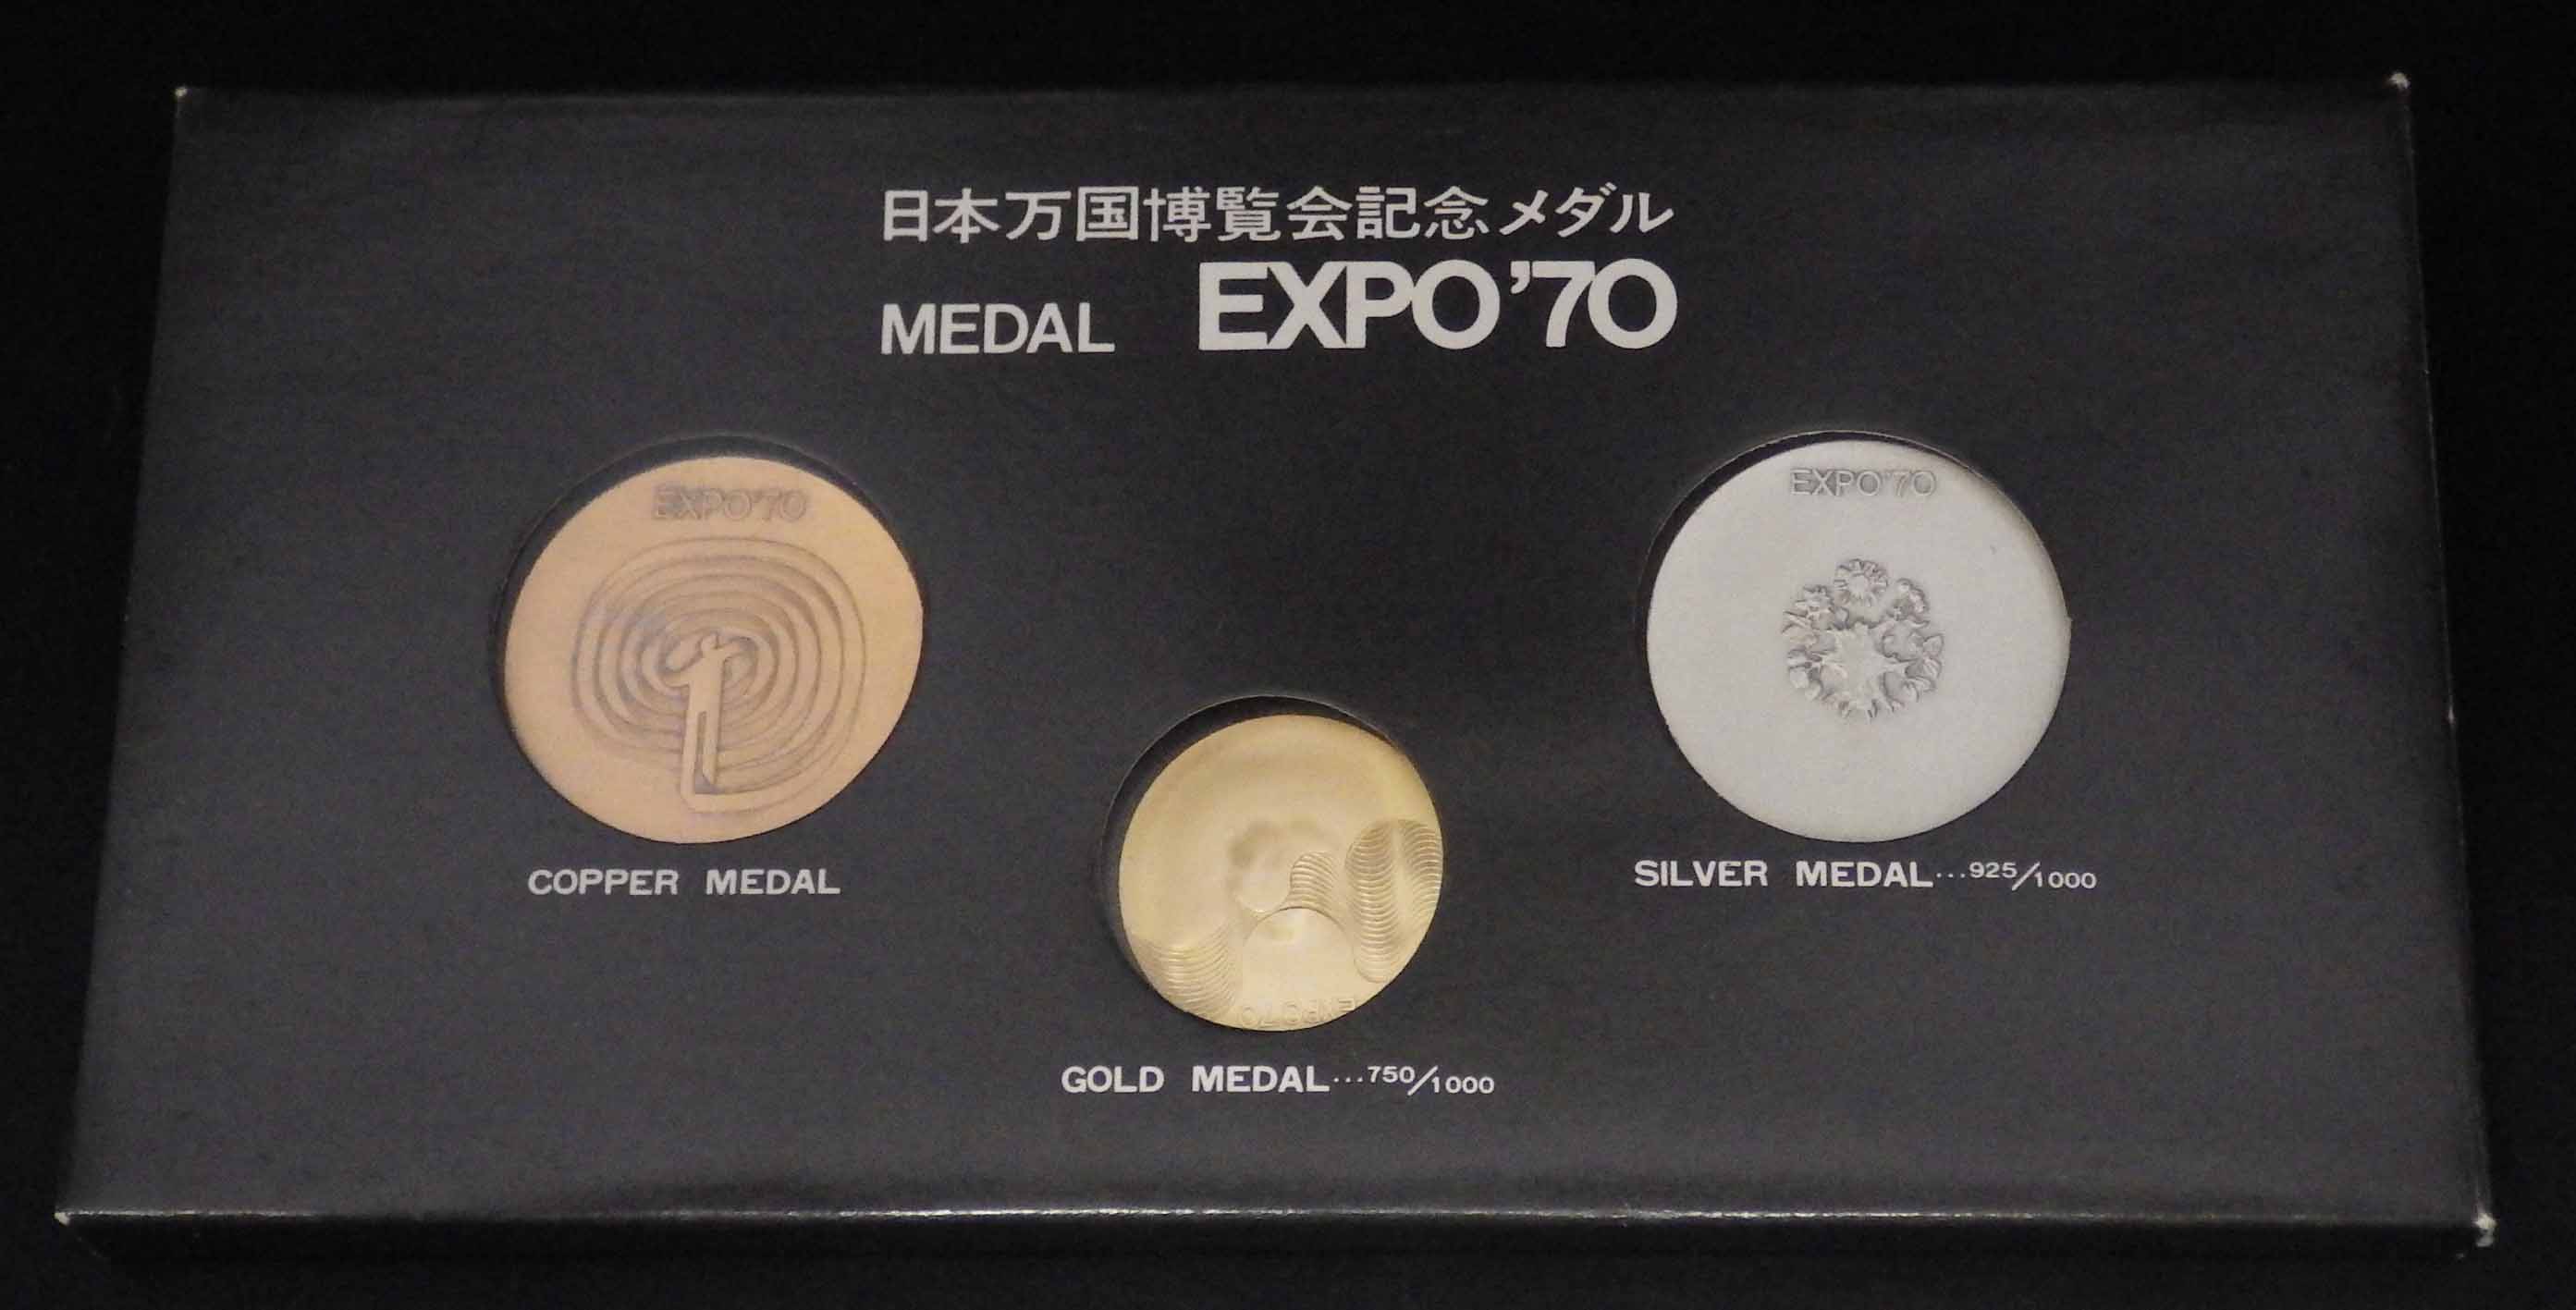 日本万国博覧会記念メダル MEDAL EXPO'70 | www.innoveering.net